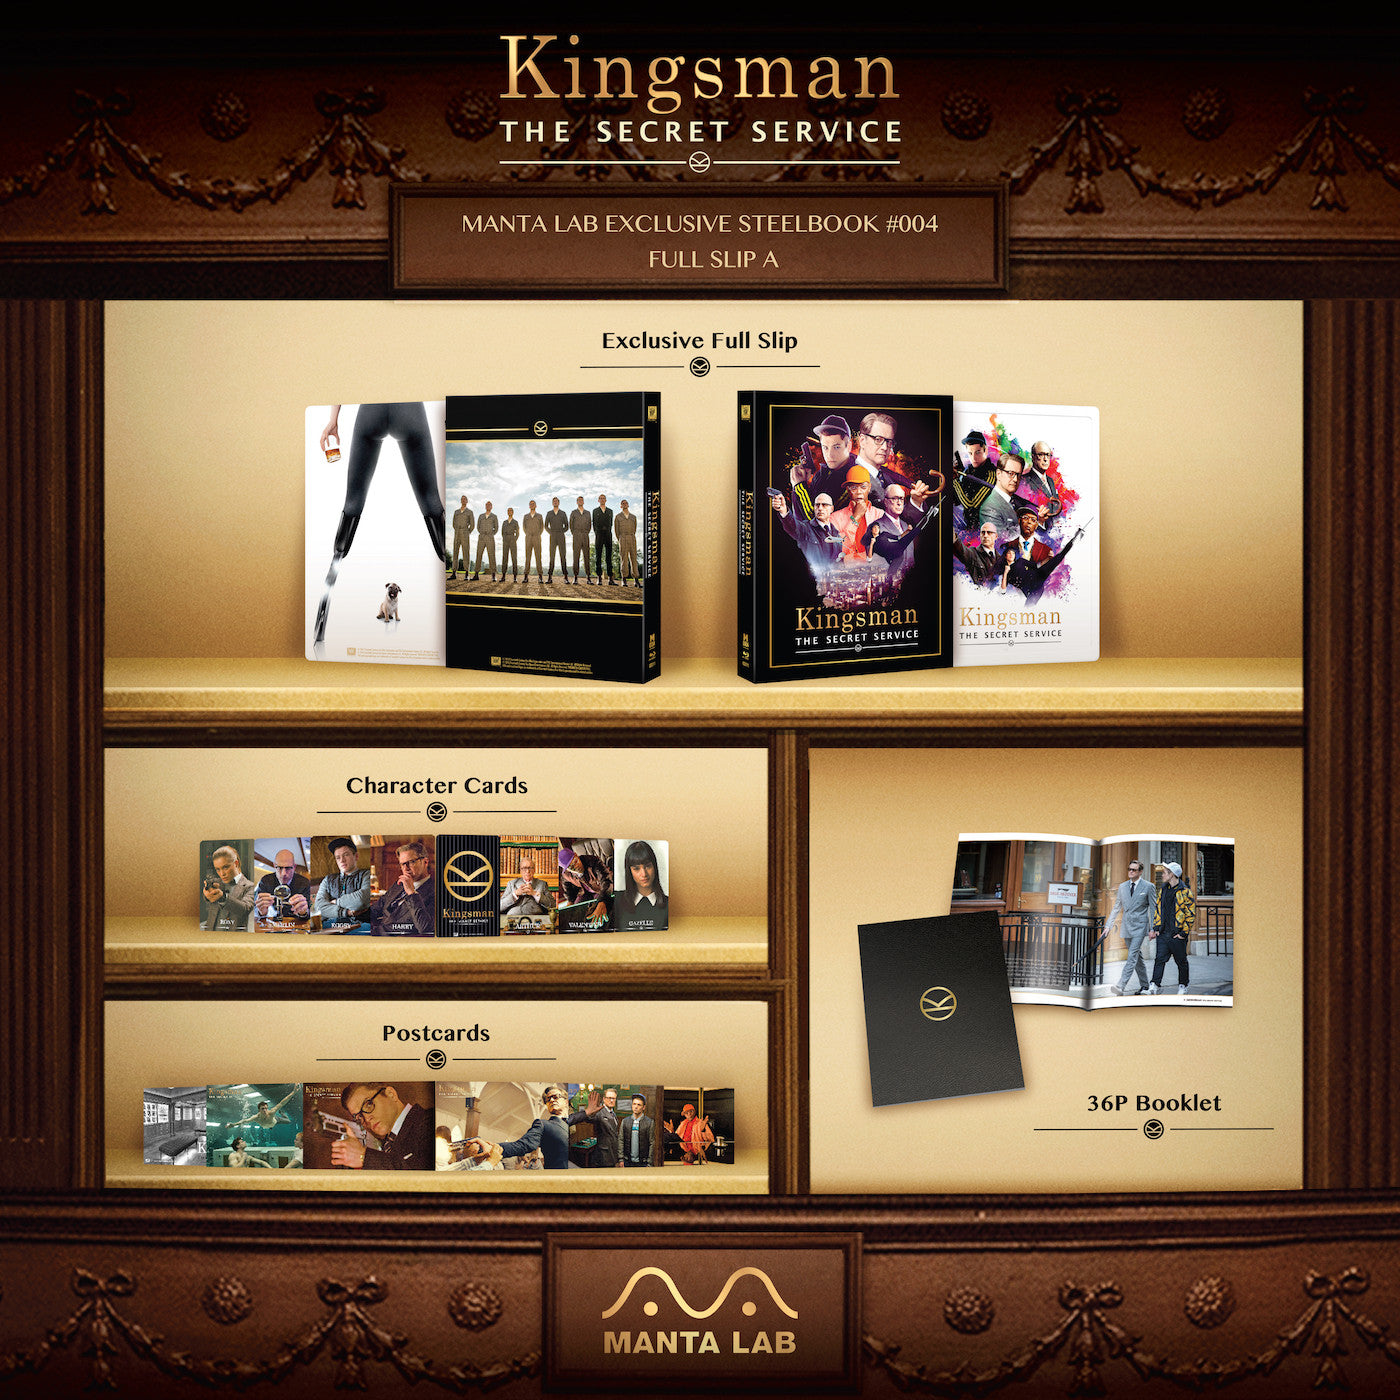 [ME#4] Kingsman: The Secret Service Steelbook (Full Slip A)